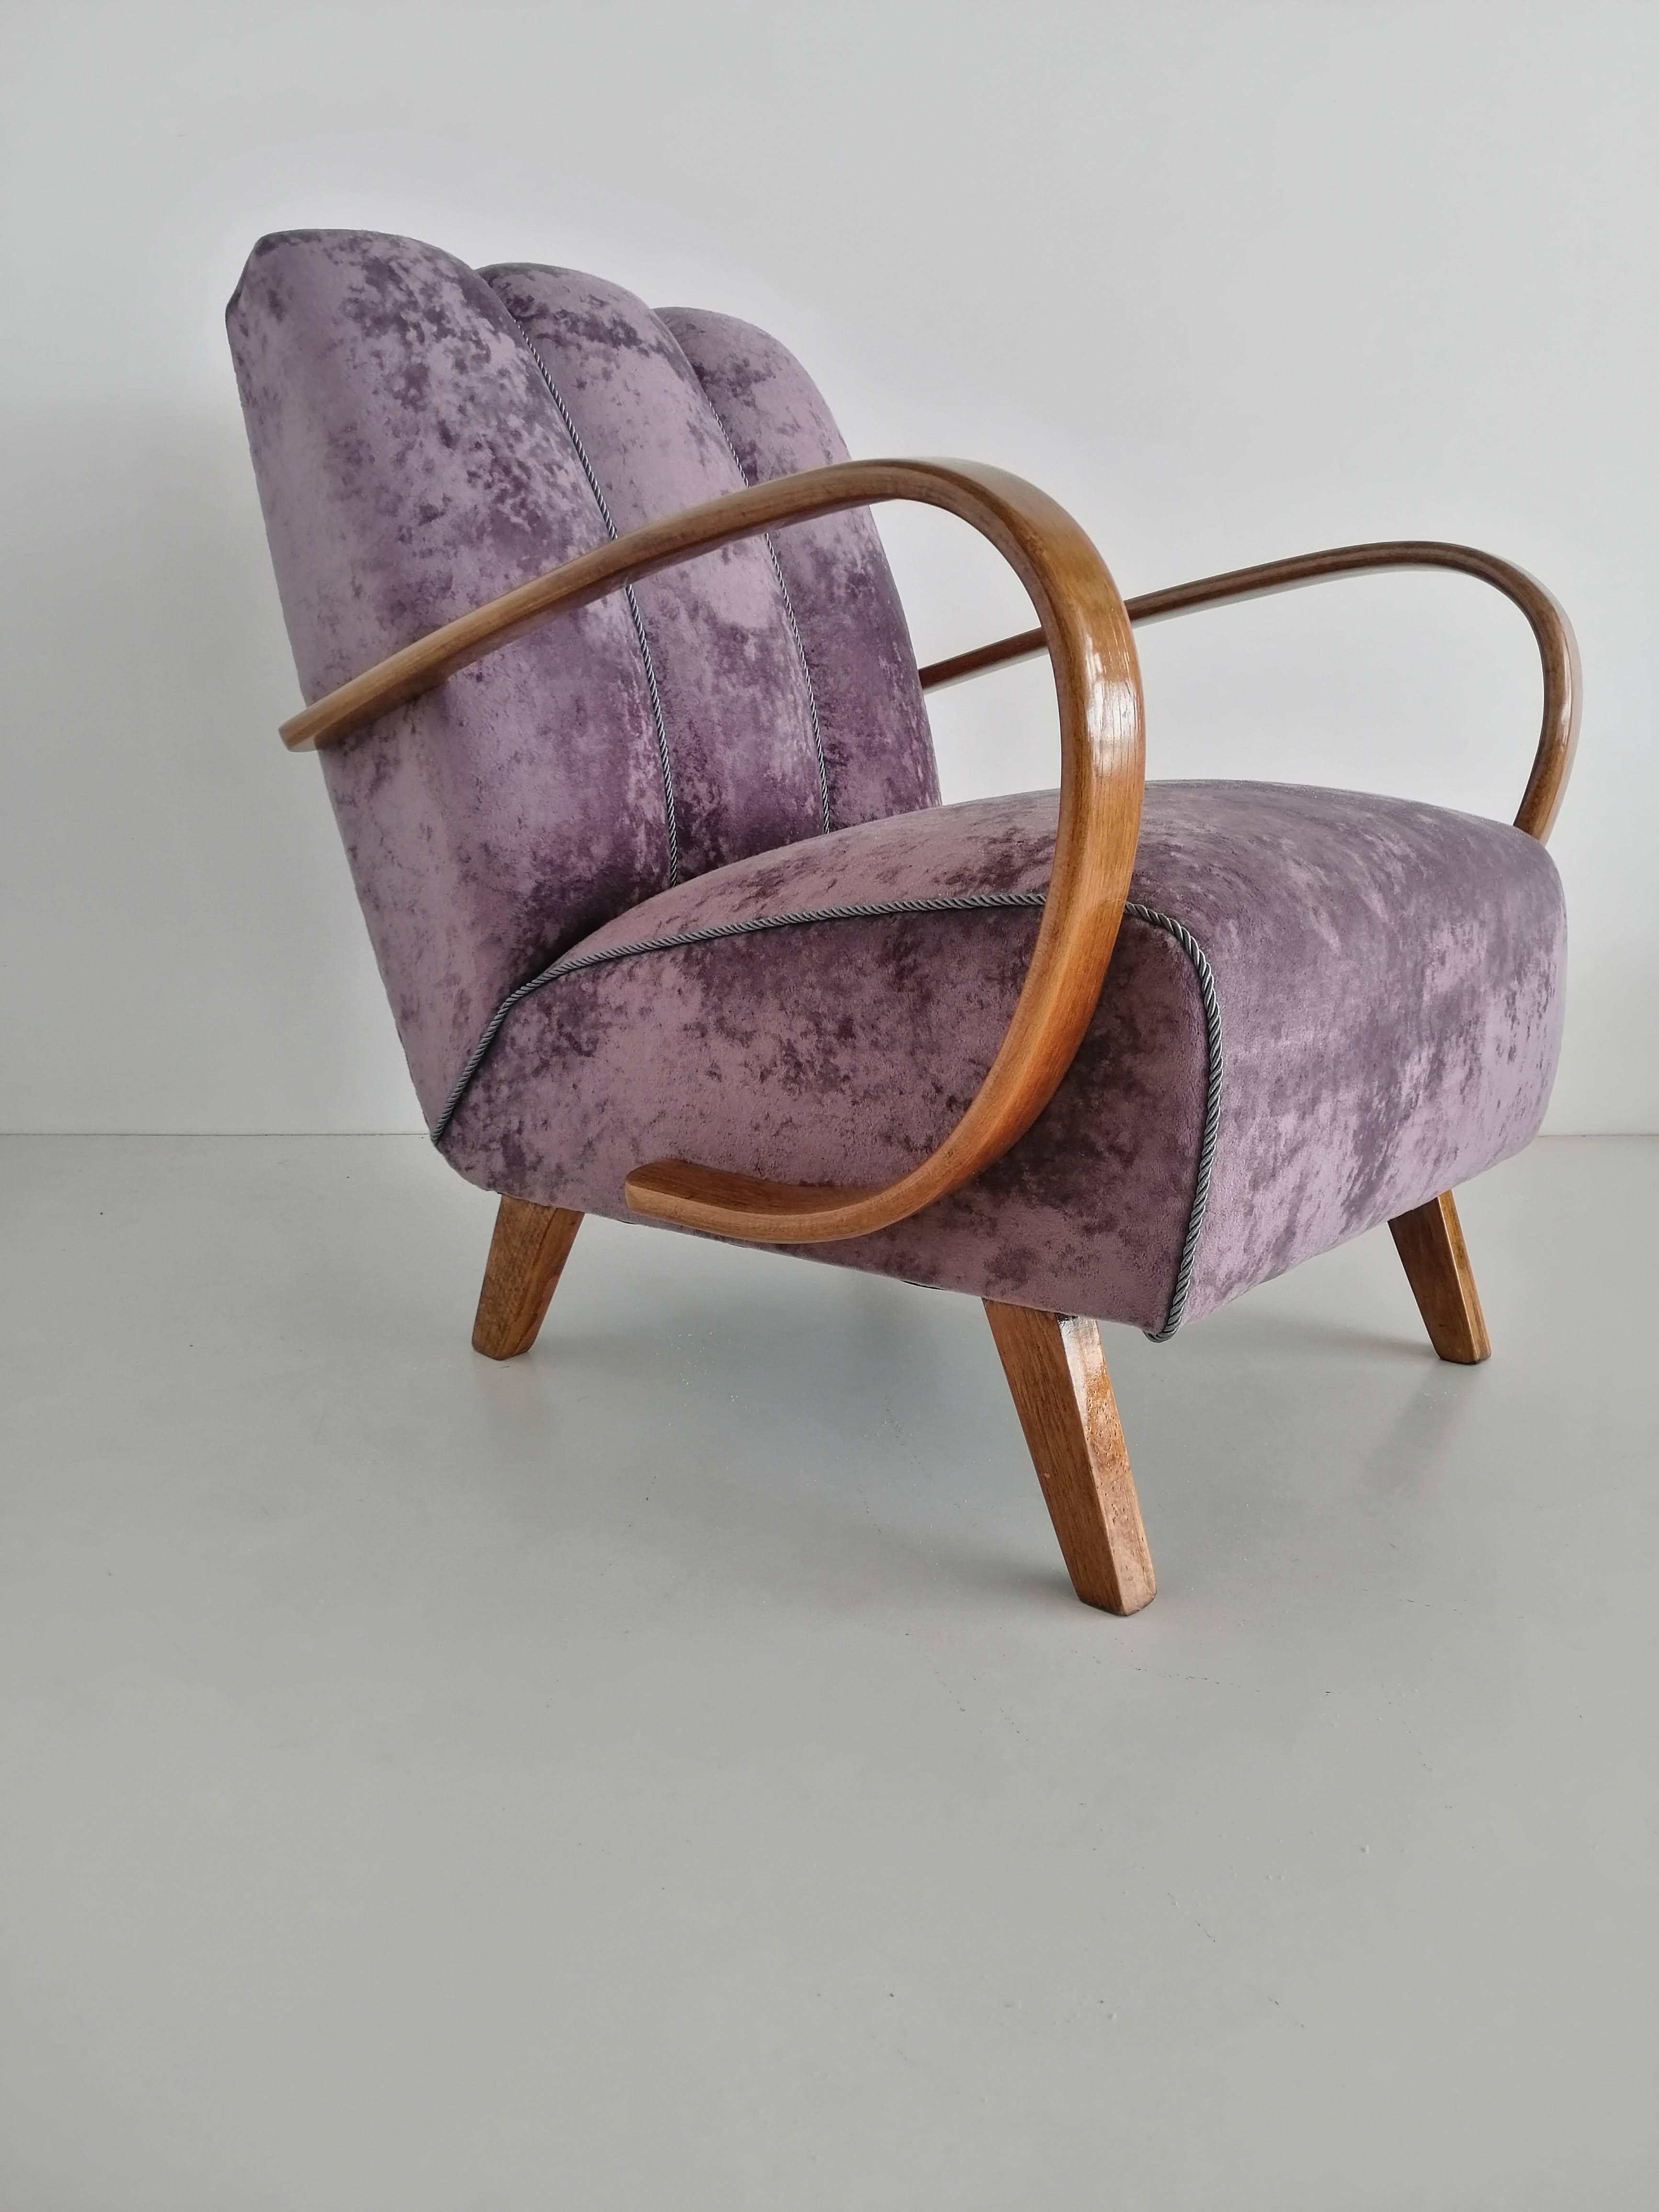 Art Deco Sessel von 1940 Tschechische Republik.
Entworfen von dem berühmten tschechischen Designer Jindrich Halabala, der zu den bedeutendsten Schöpfern der Moderne zählt. Der Höhepunkt seiner Karriere fiel in die 1930er und 1940er Jahre, als er